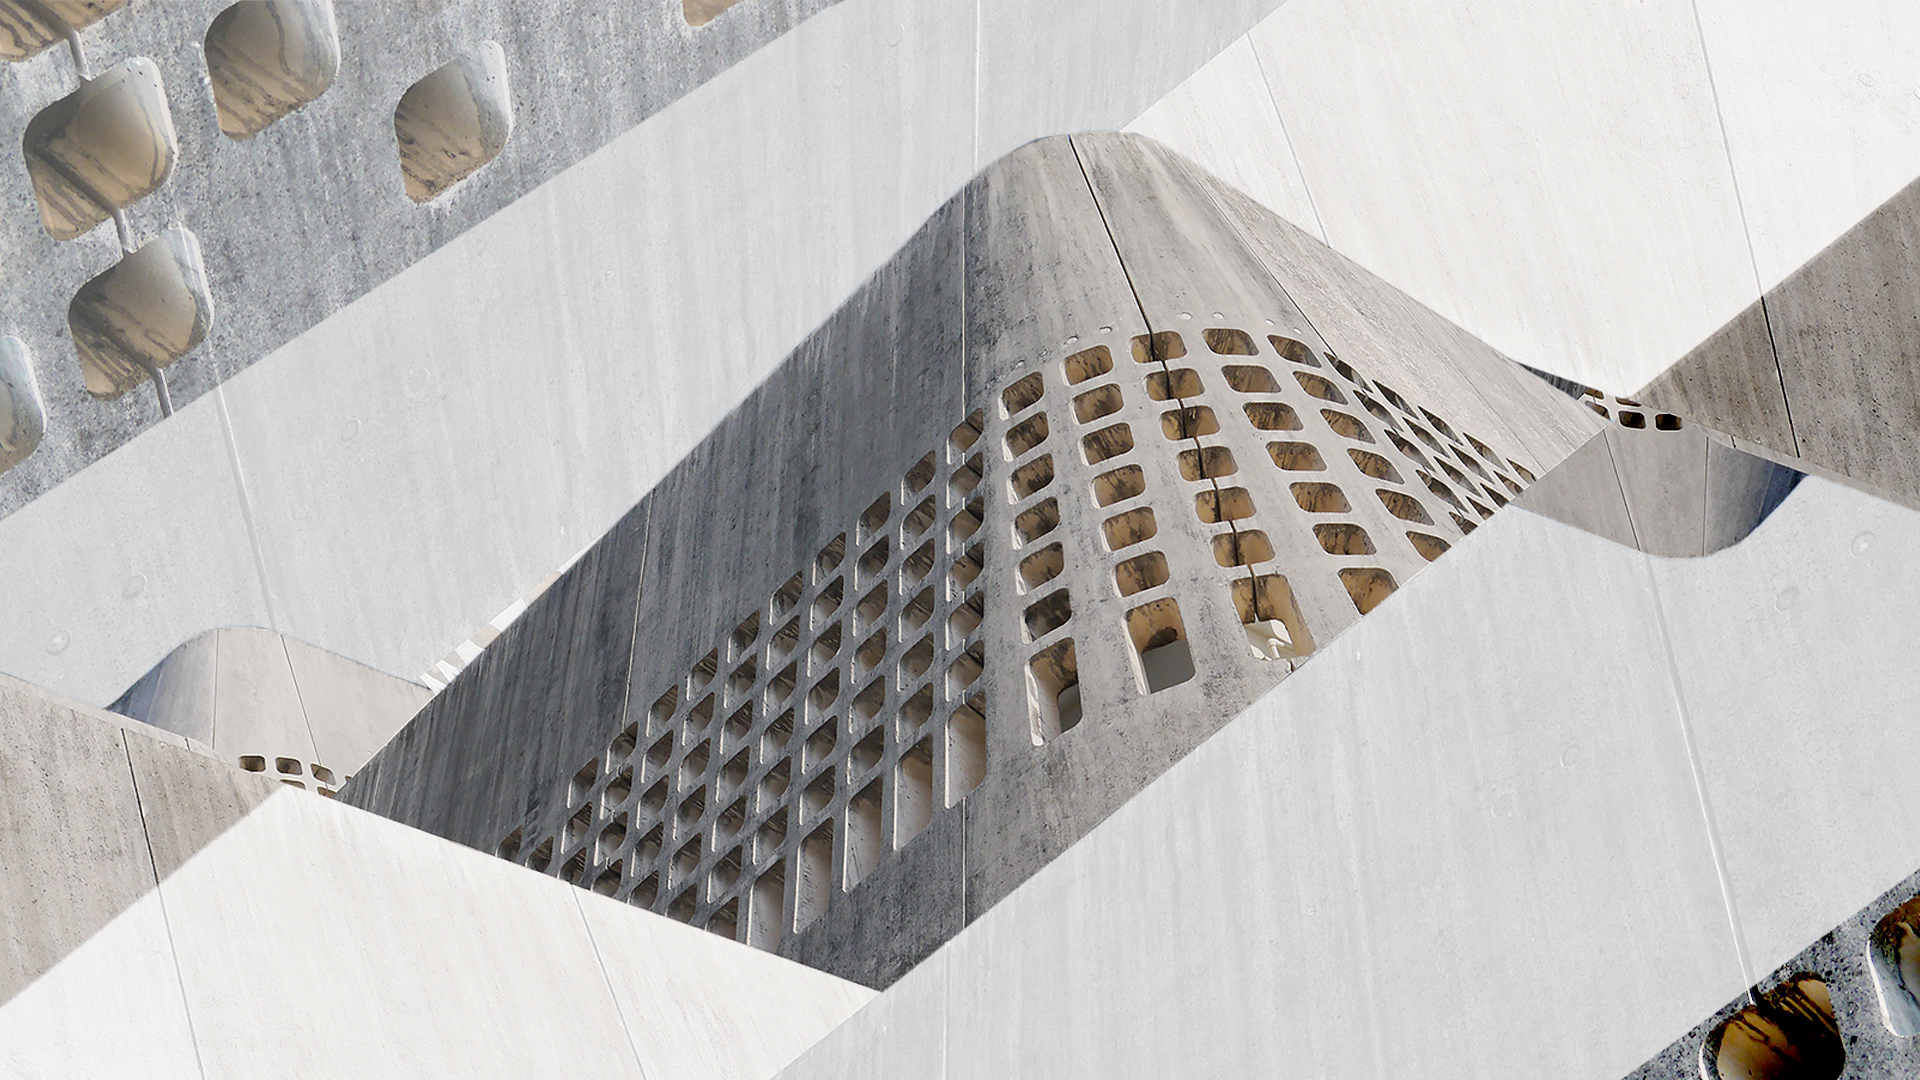 Montage of brutalist concrete buildings